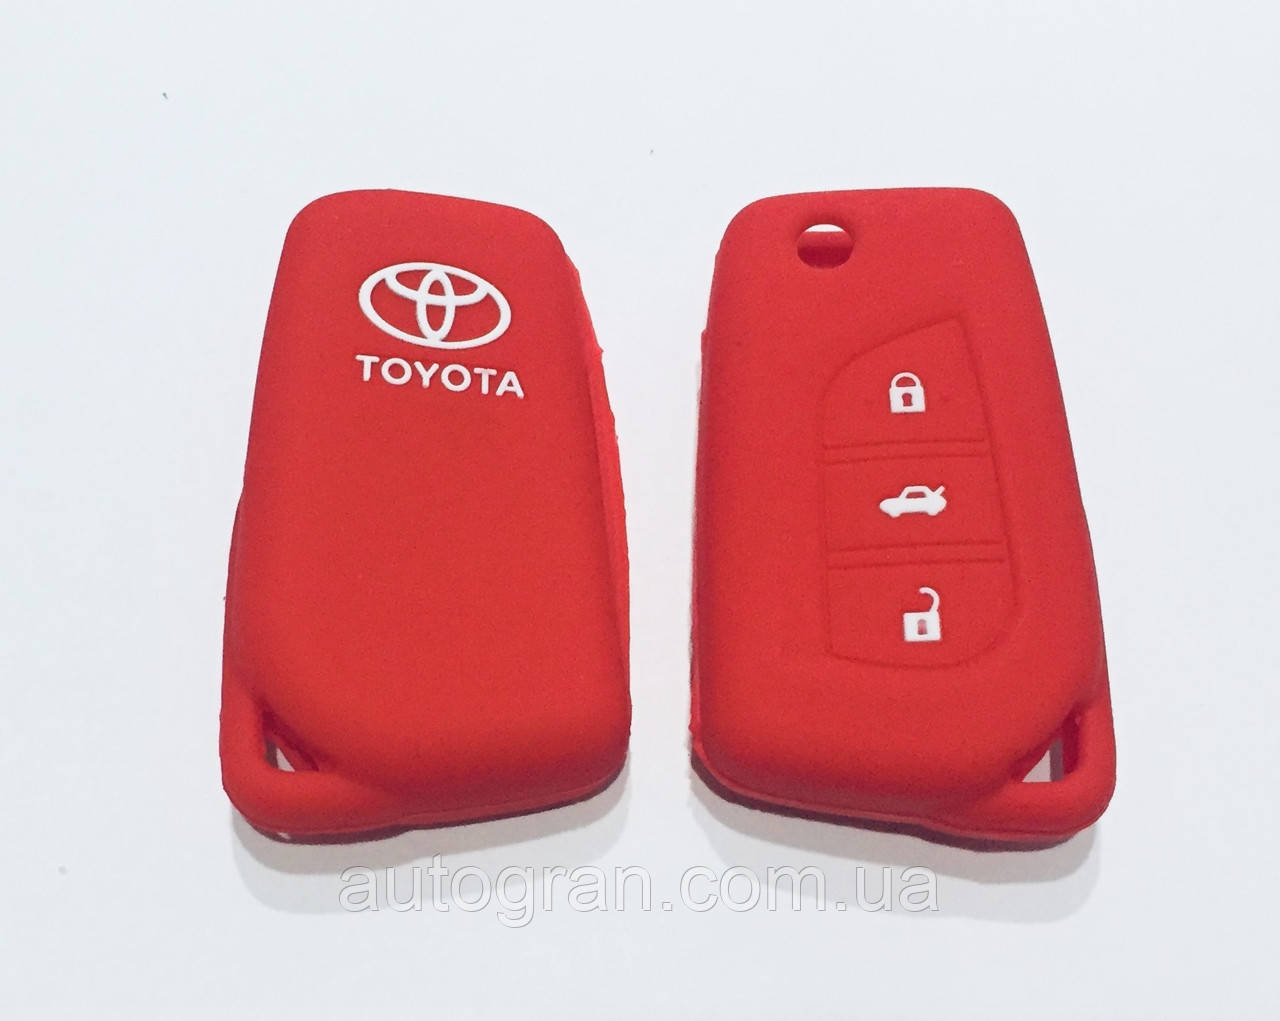 Силіконовий чохол на викидний ключ Toyota 3 кнопки червоний